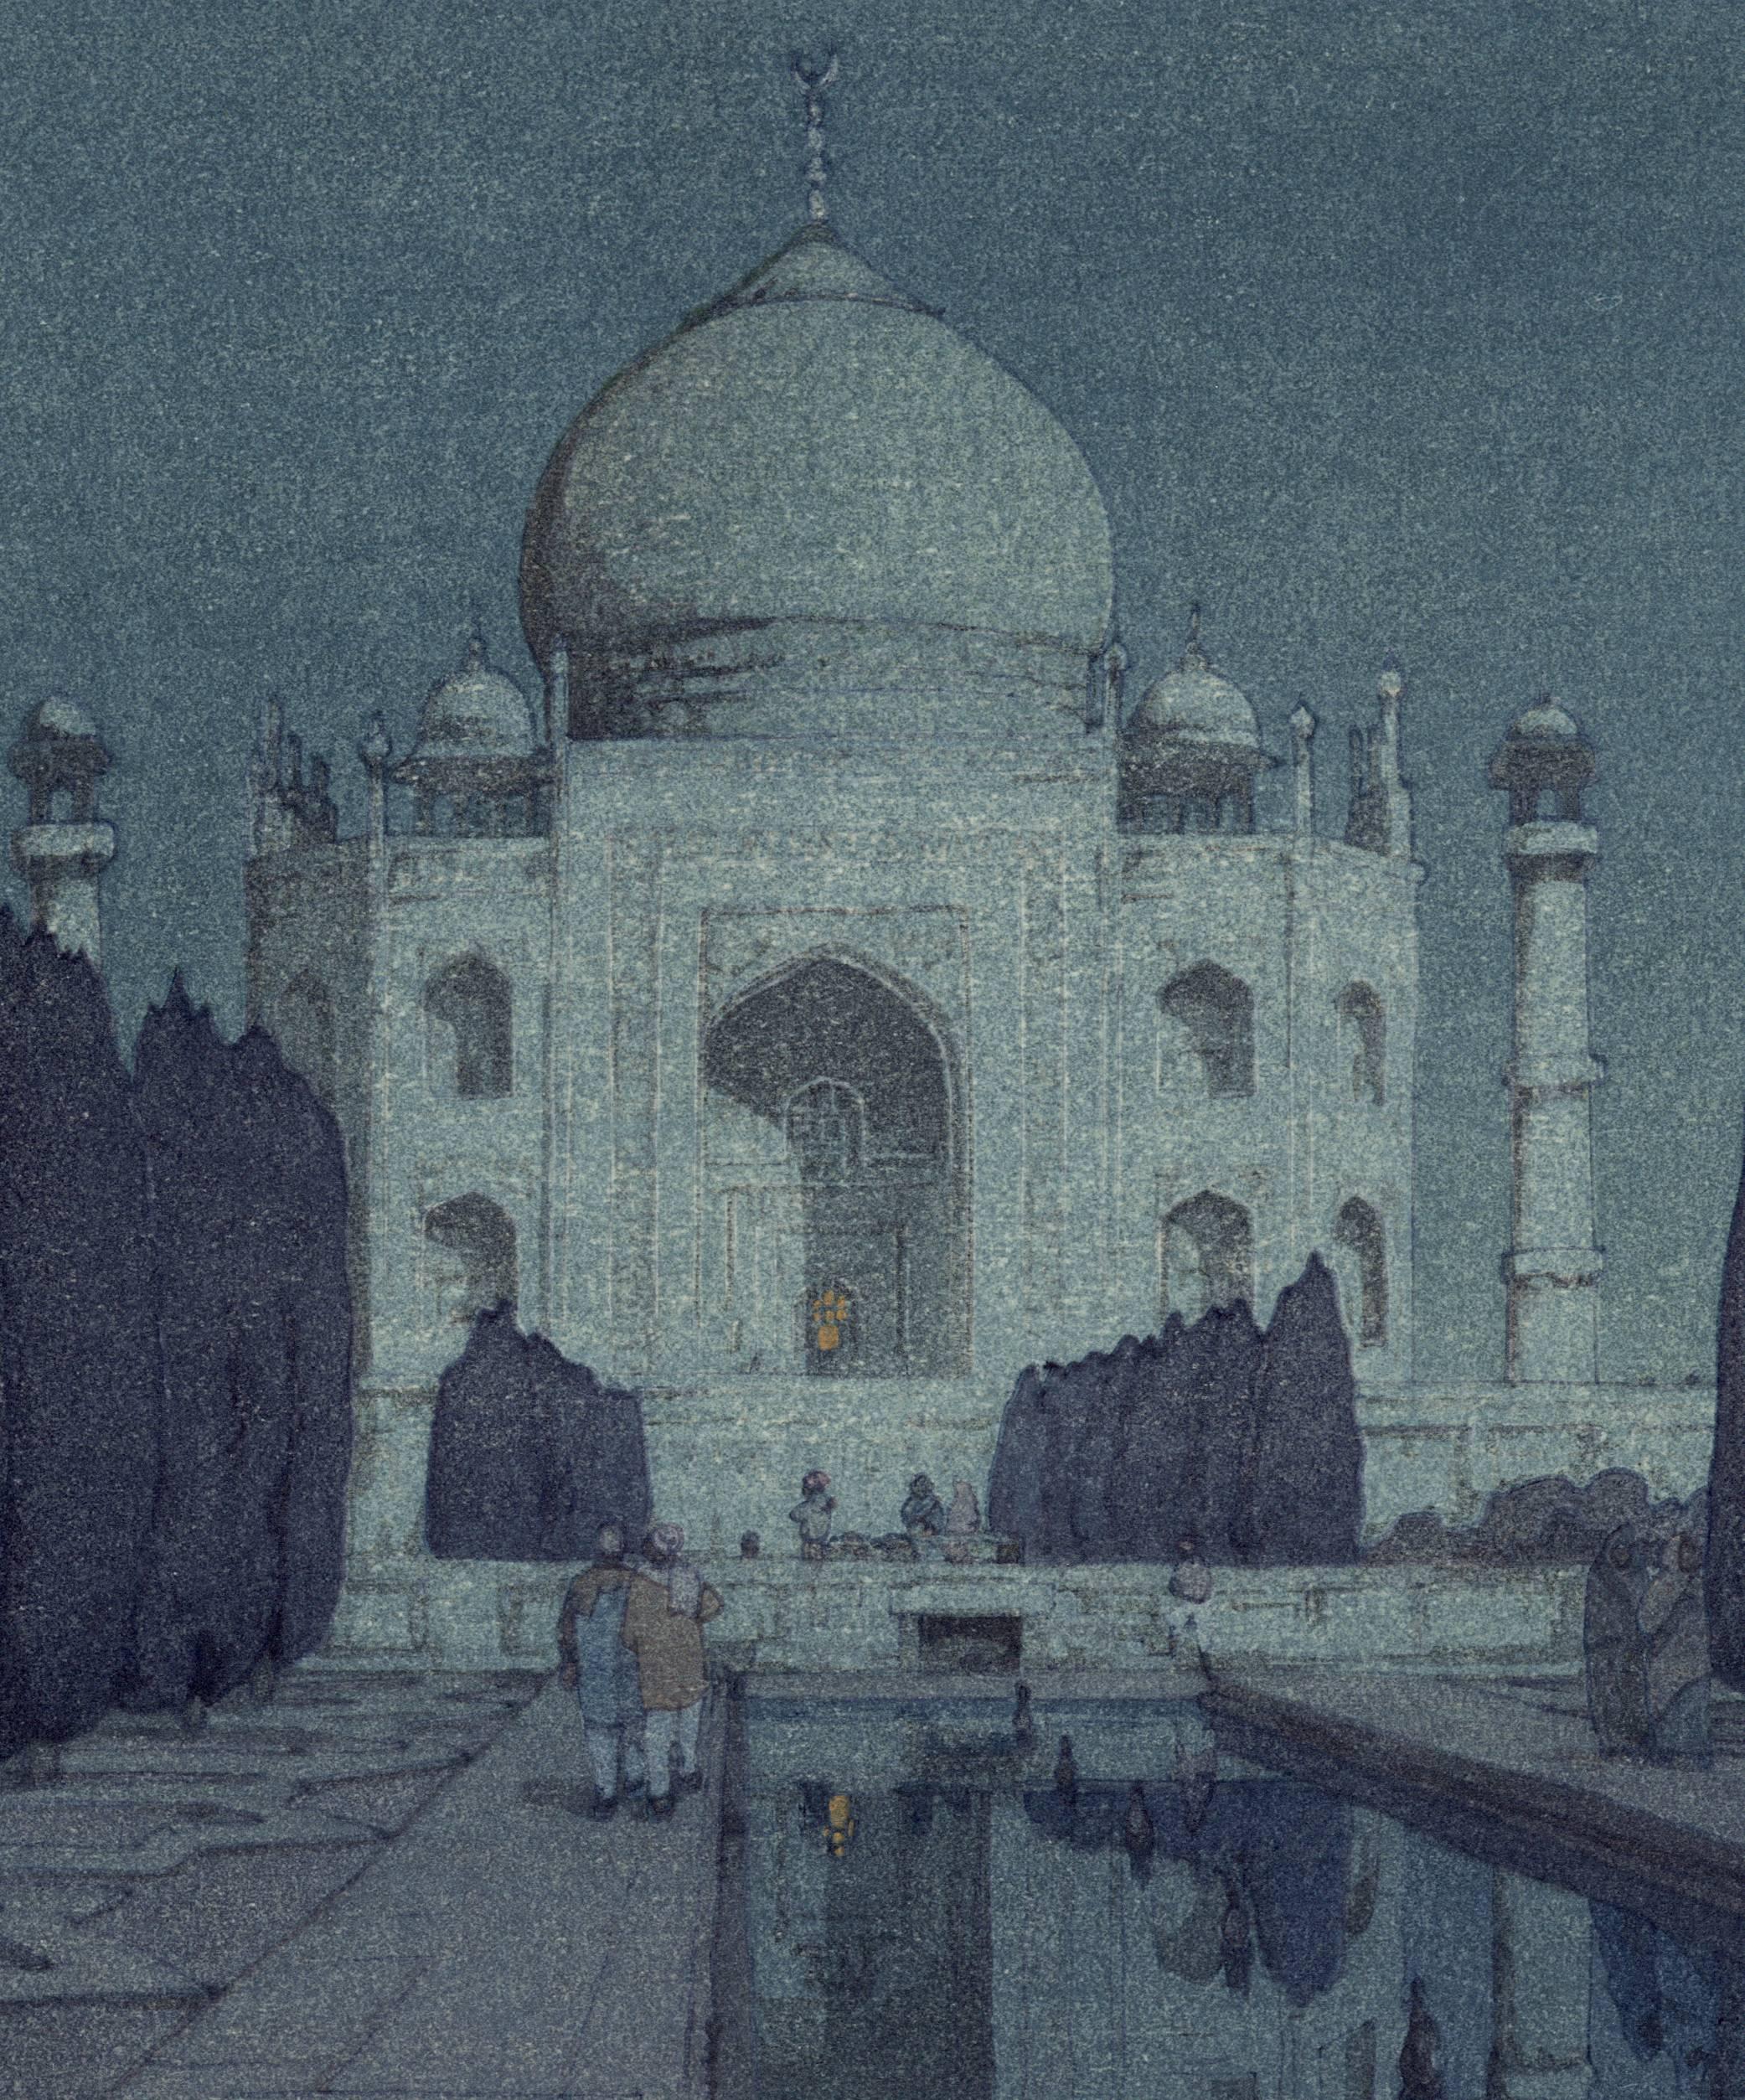 The Taj Mahal Gardens (Night) - Print by Hiroshi Yoshida